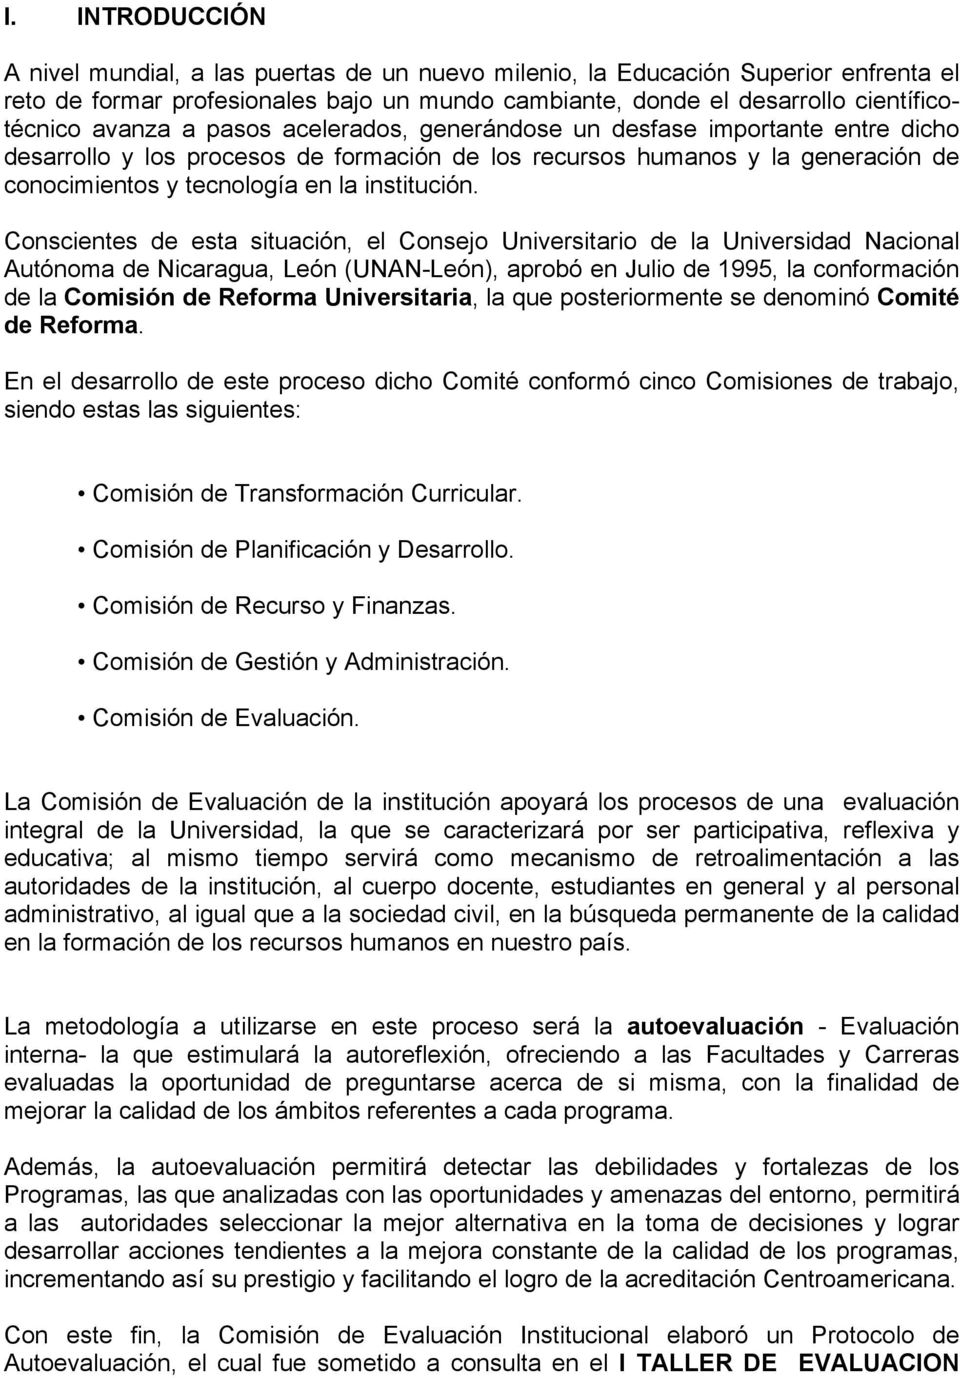 Conscientes de esta situación, el Consejo Universitario de la Universidad Nacional Autónoma de Nicaragua, León (UNAN-León), aprobó en Julio de 1995, la conformación de la Comisión de Reforma